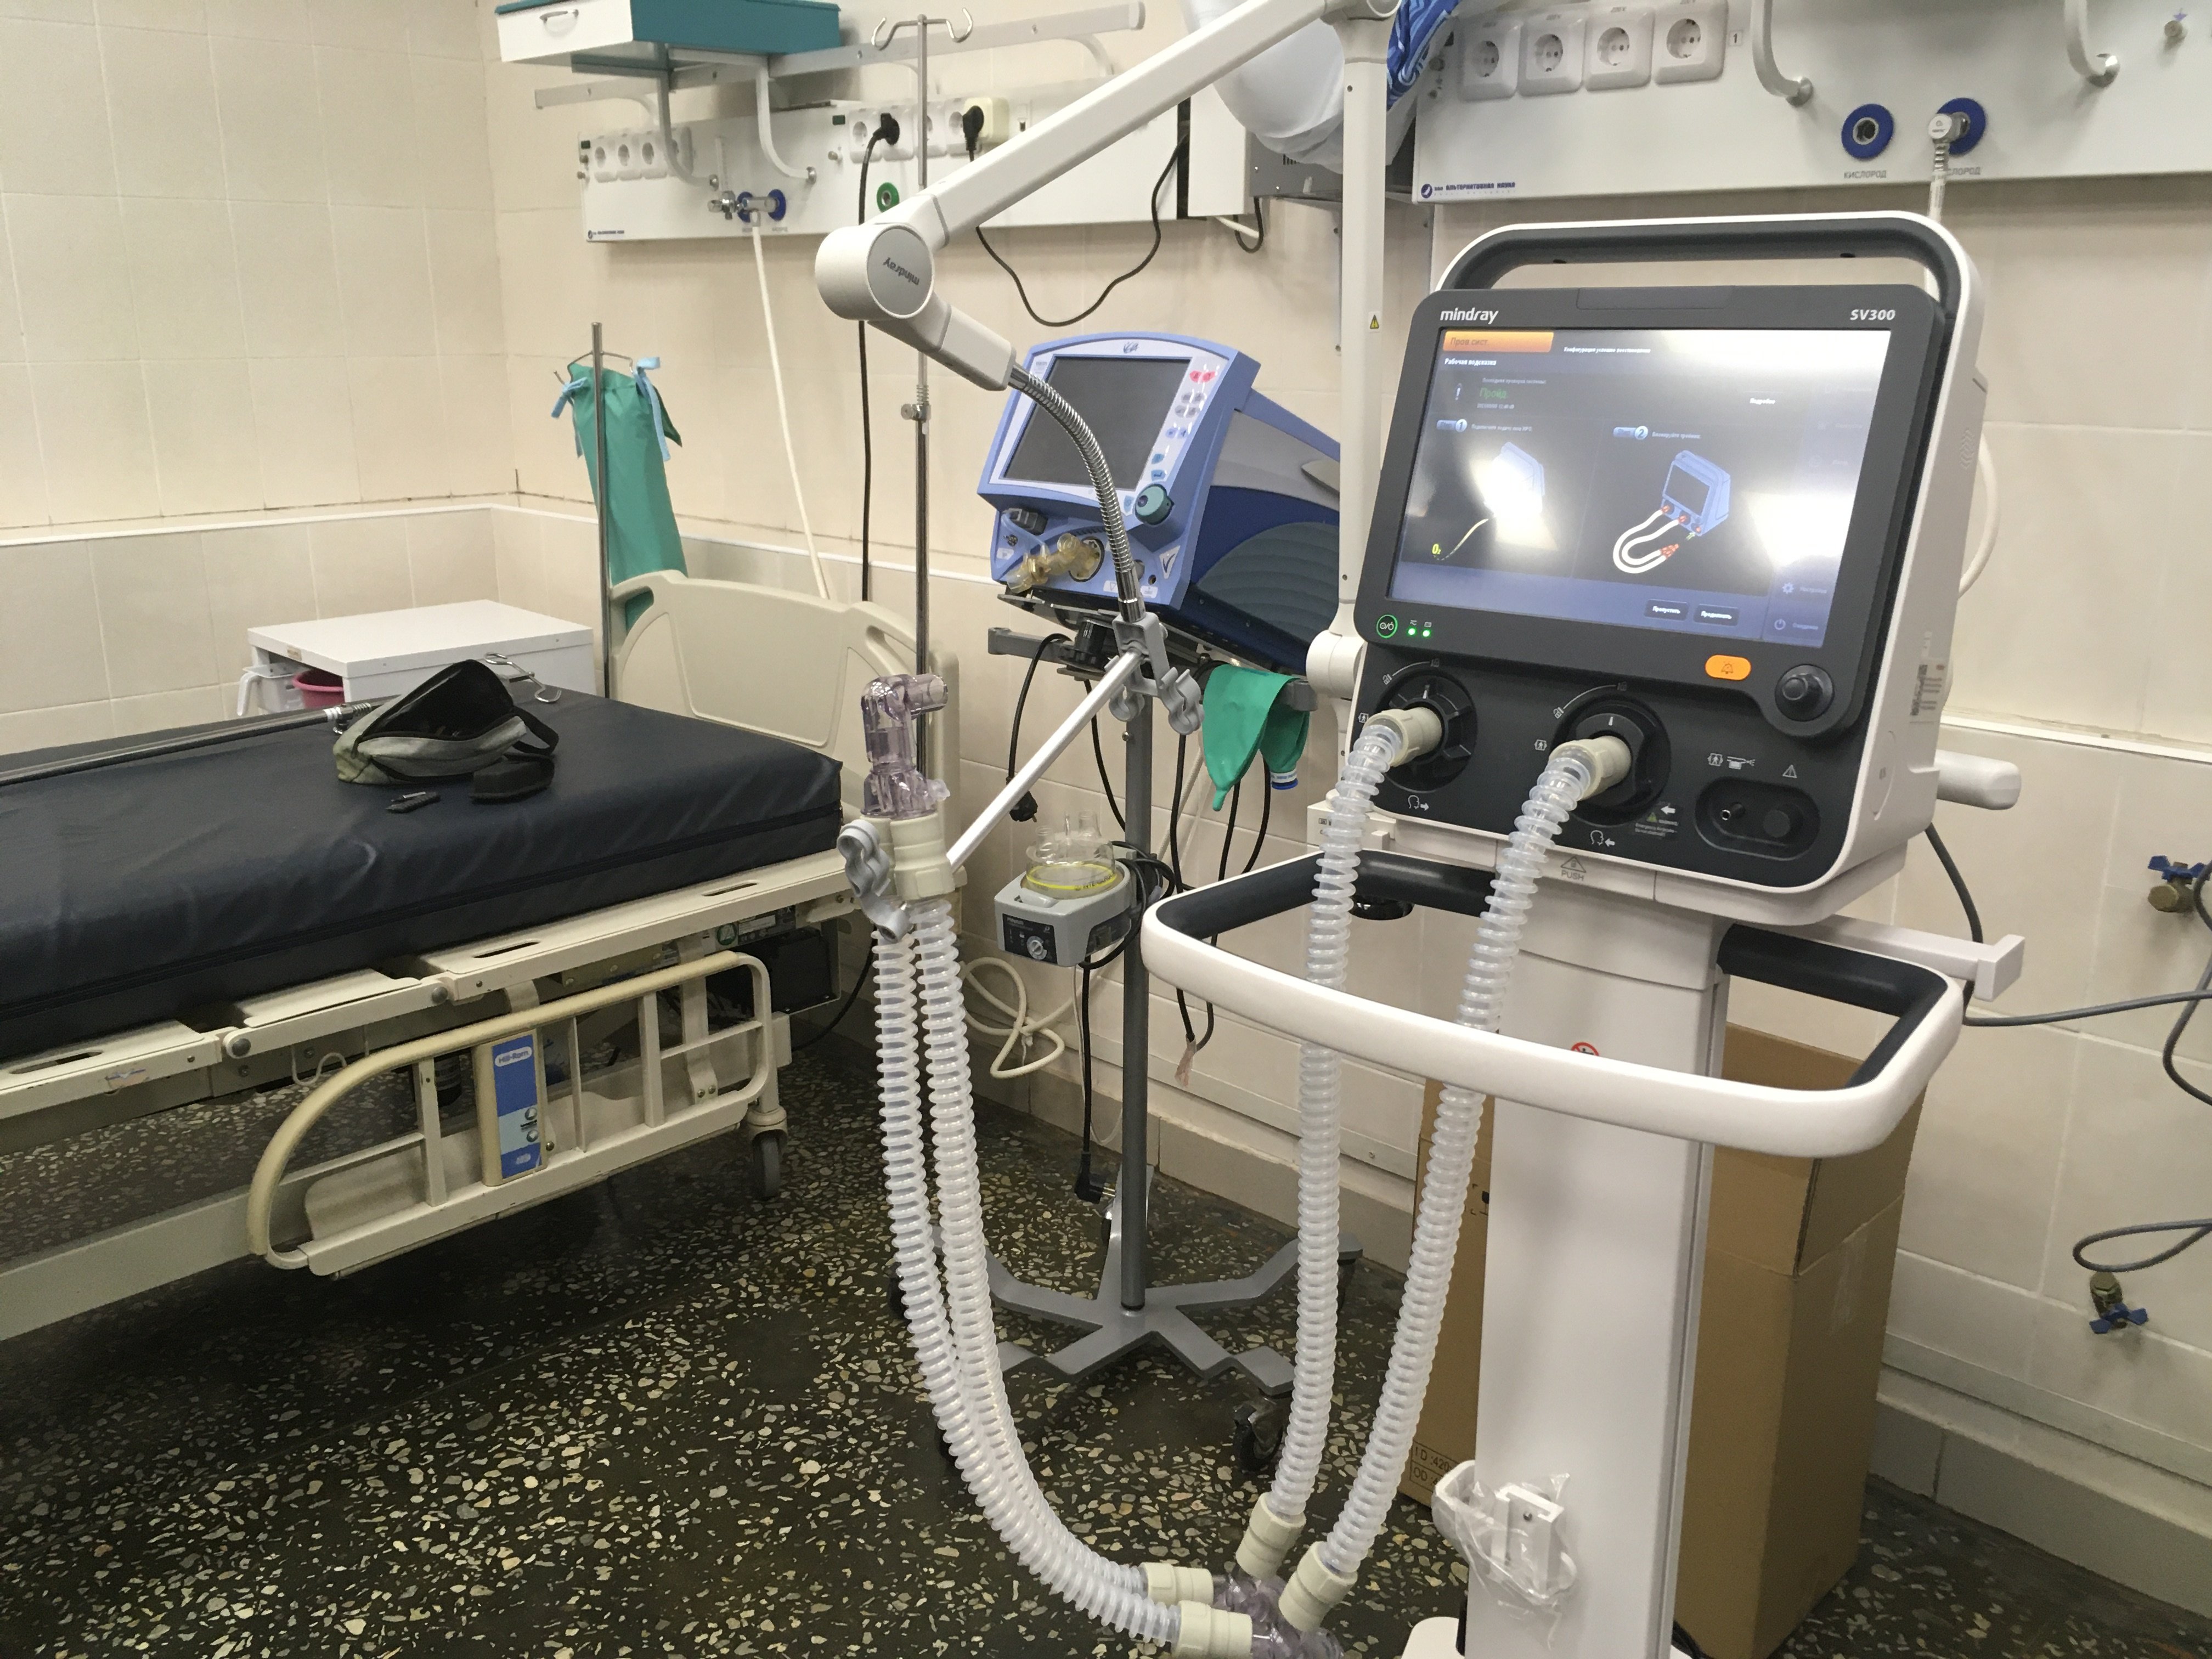 

Новые аппараты искусственной вентиляции легких получили ковид-центры Удмуртии 

